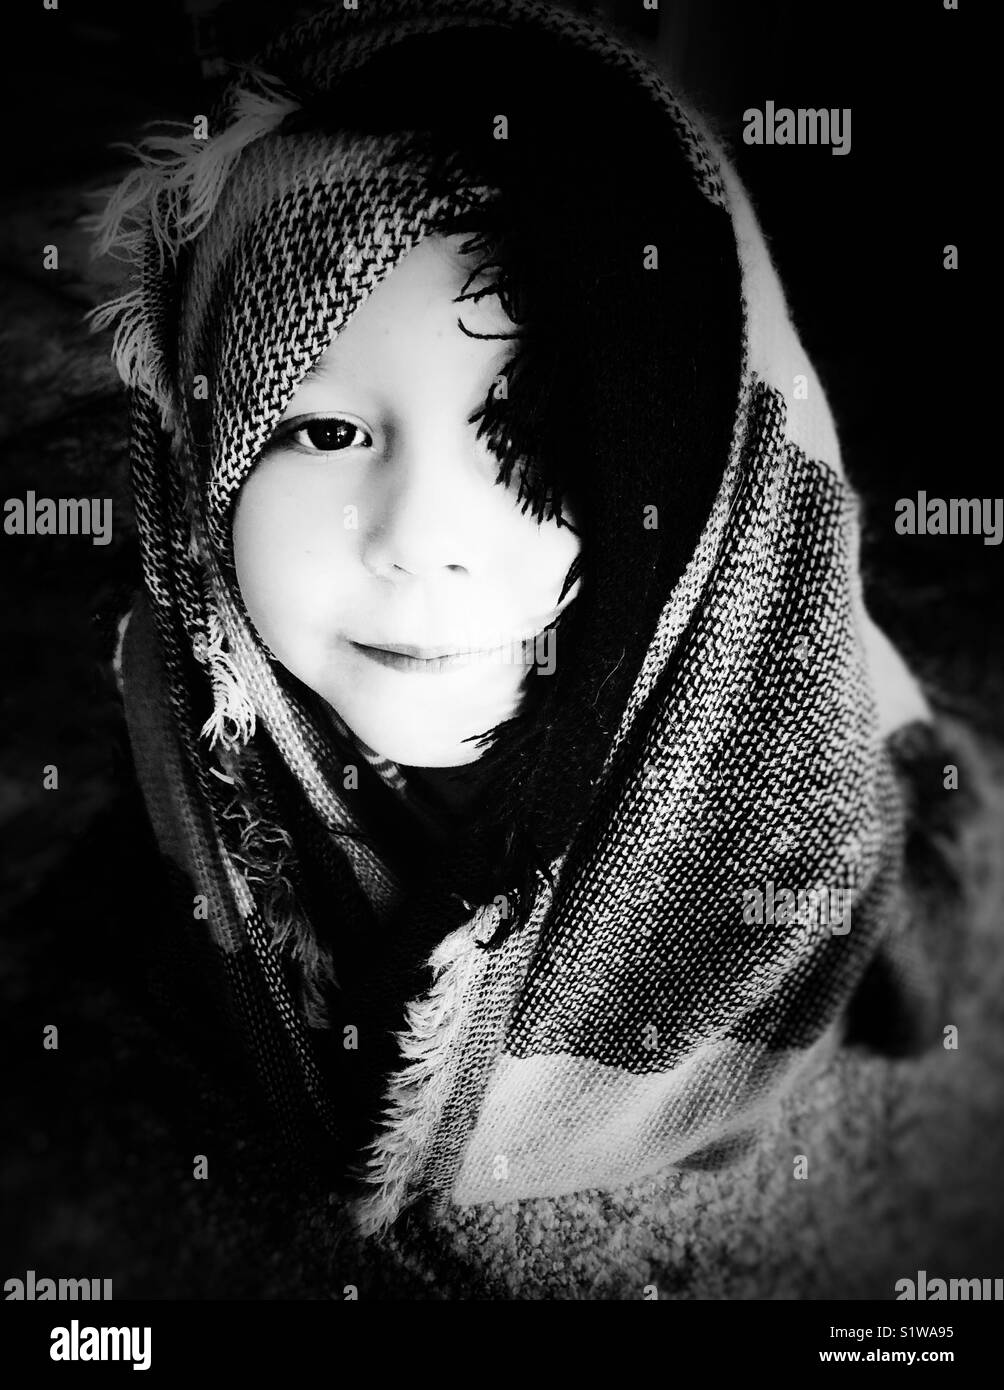 Ritratto di una ragazza avvolto in una coperta che copre la testa e occhio in bianco e nero Foto Stock